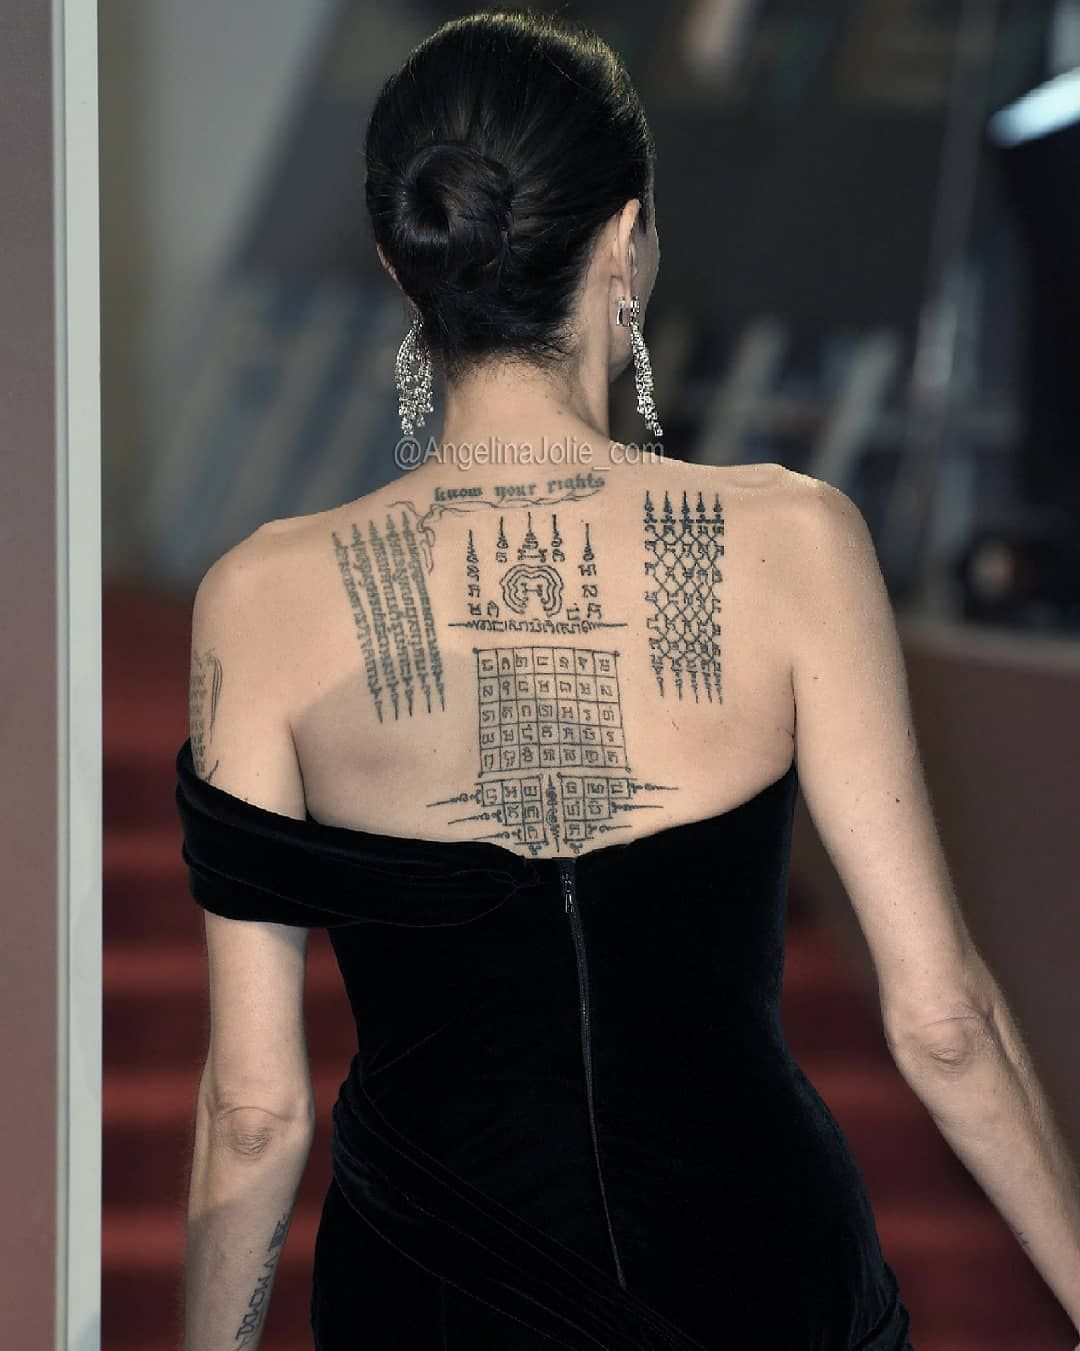 Angelina Jolie Tattoos 